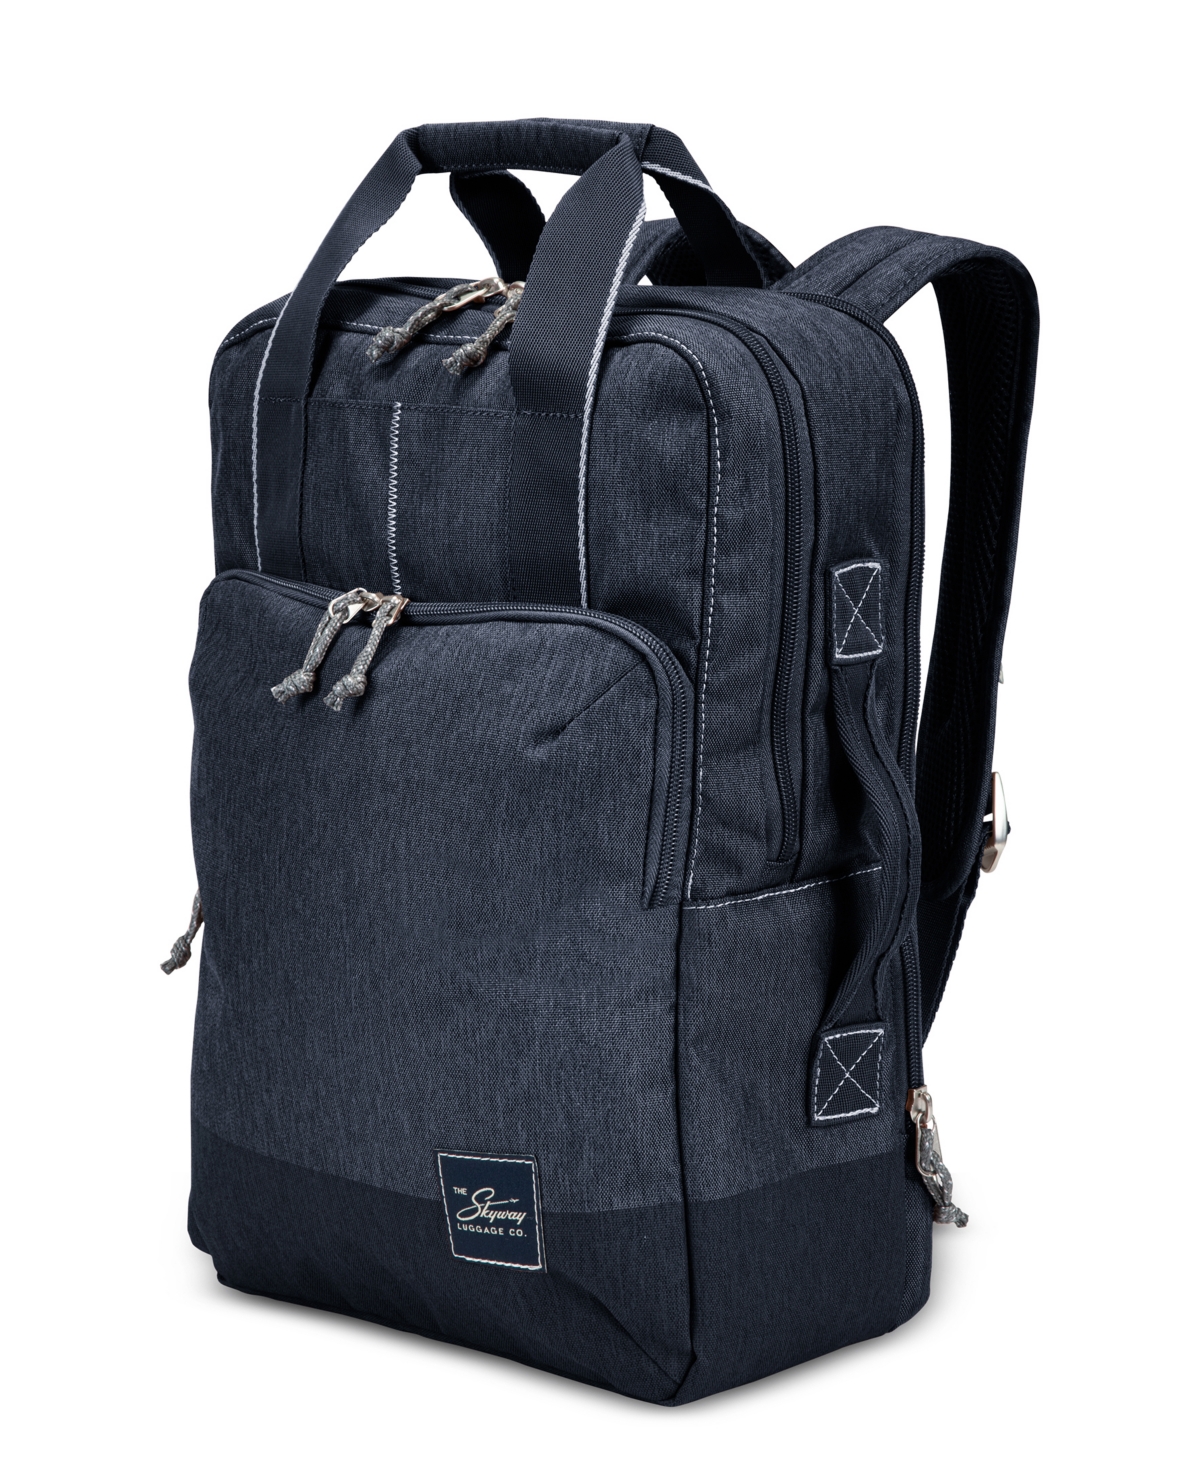 Skyway Rainier Deluxe Backpack, 17